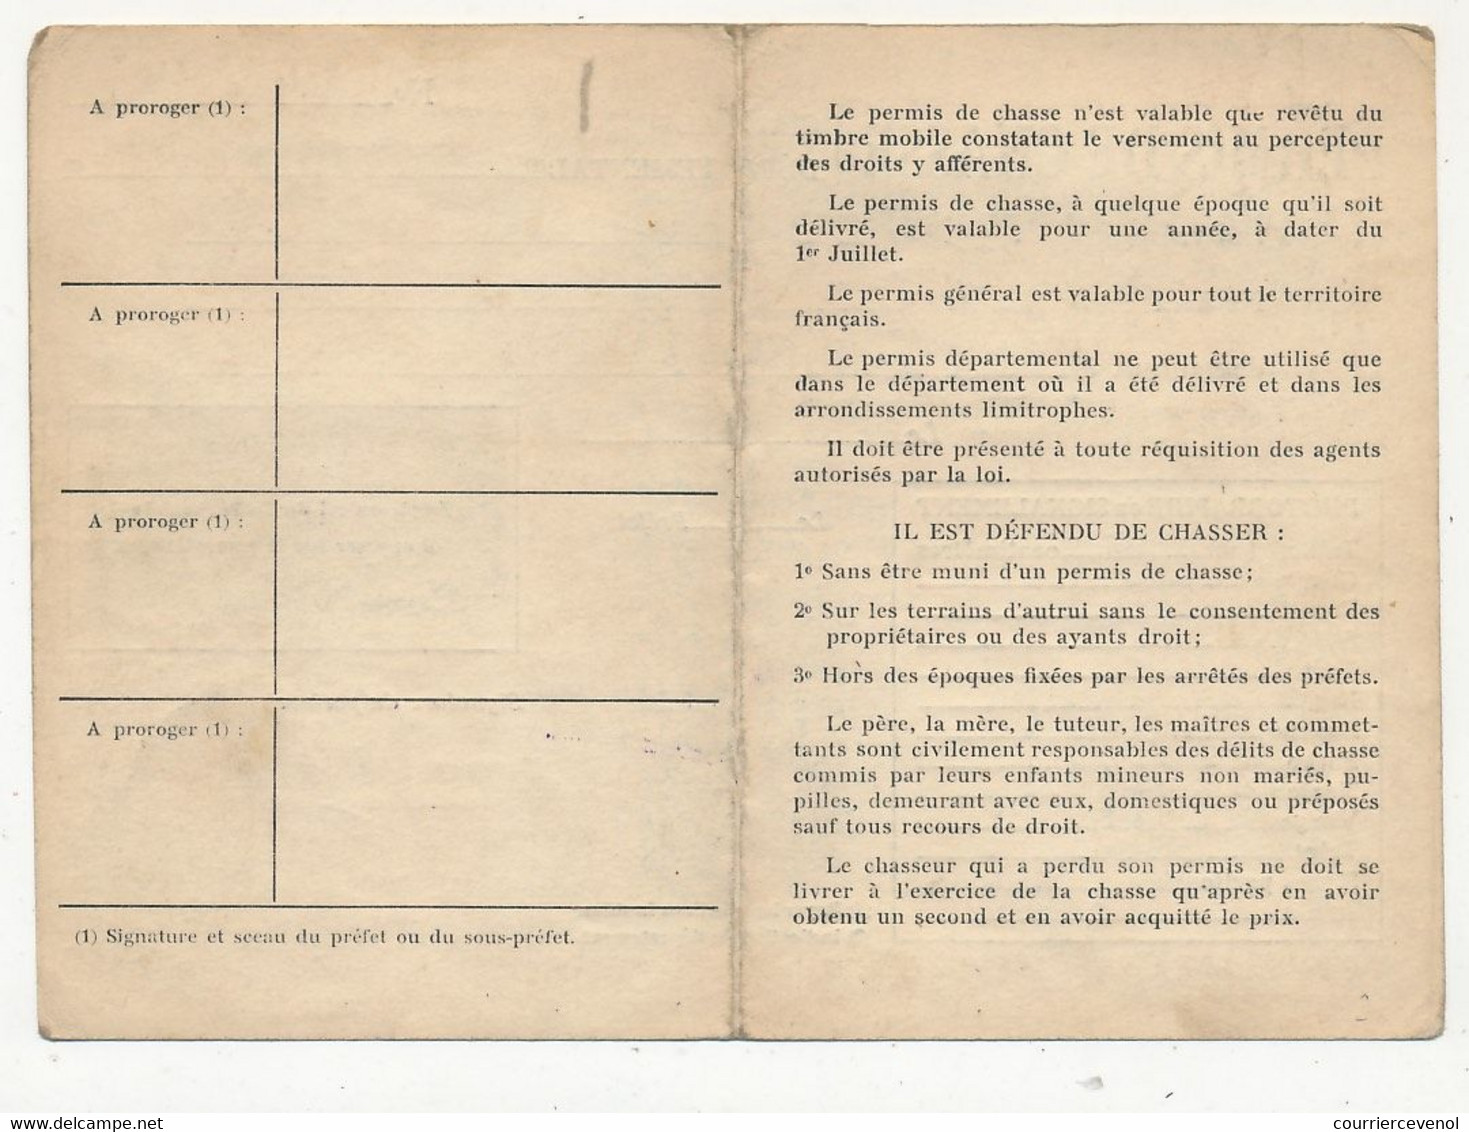 Permis De Chasse Départemental - Timbre Fiscal 1951 - Préfecture Des Bouches Du Rhône - Covers & Documents